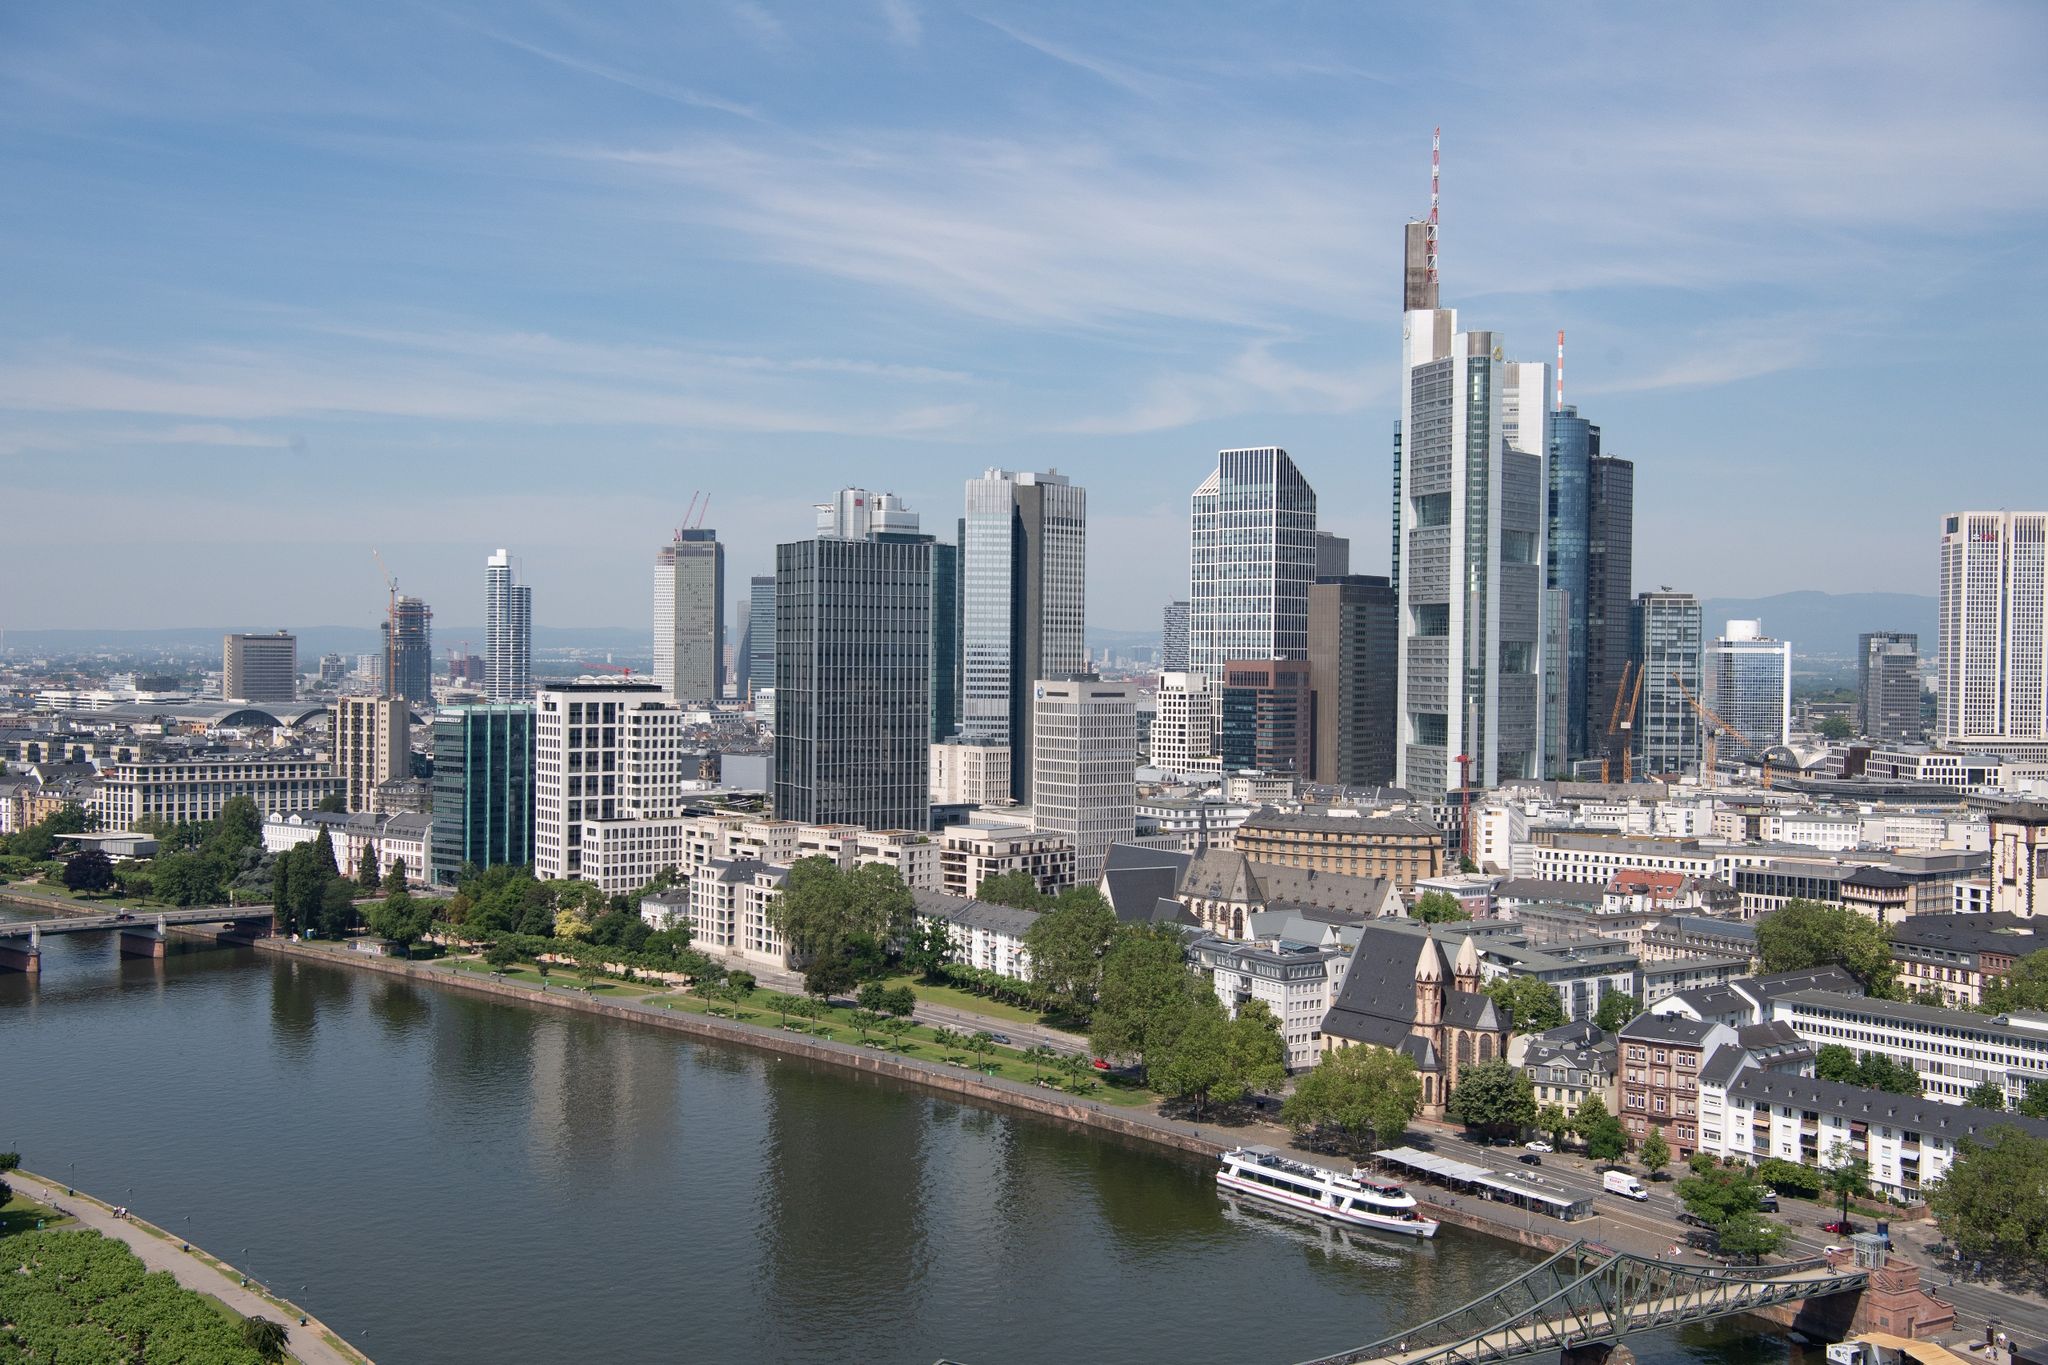 Die Bankenskyline von Frankfurt: In Deutschland gibt es erstmals weniger als 20.000 Bankfilialen.